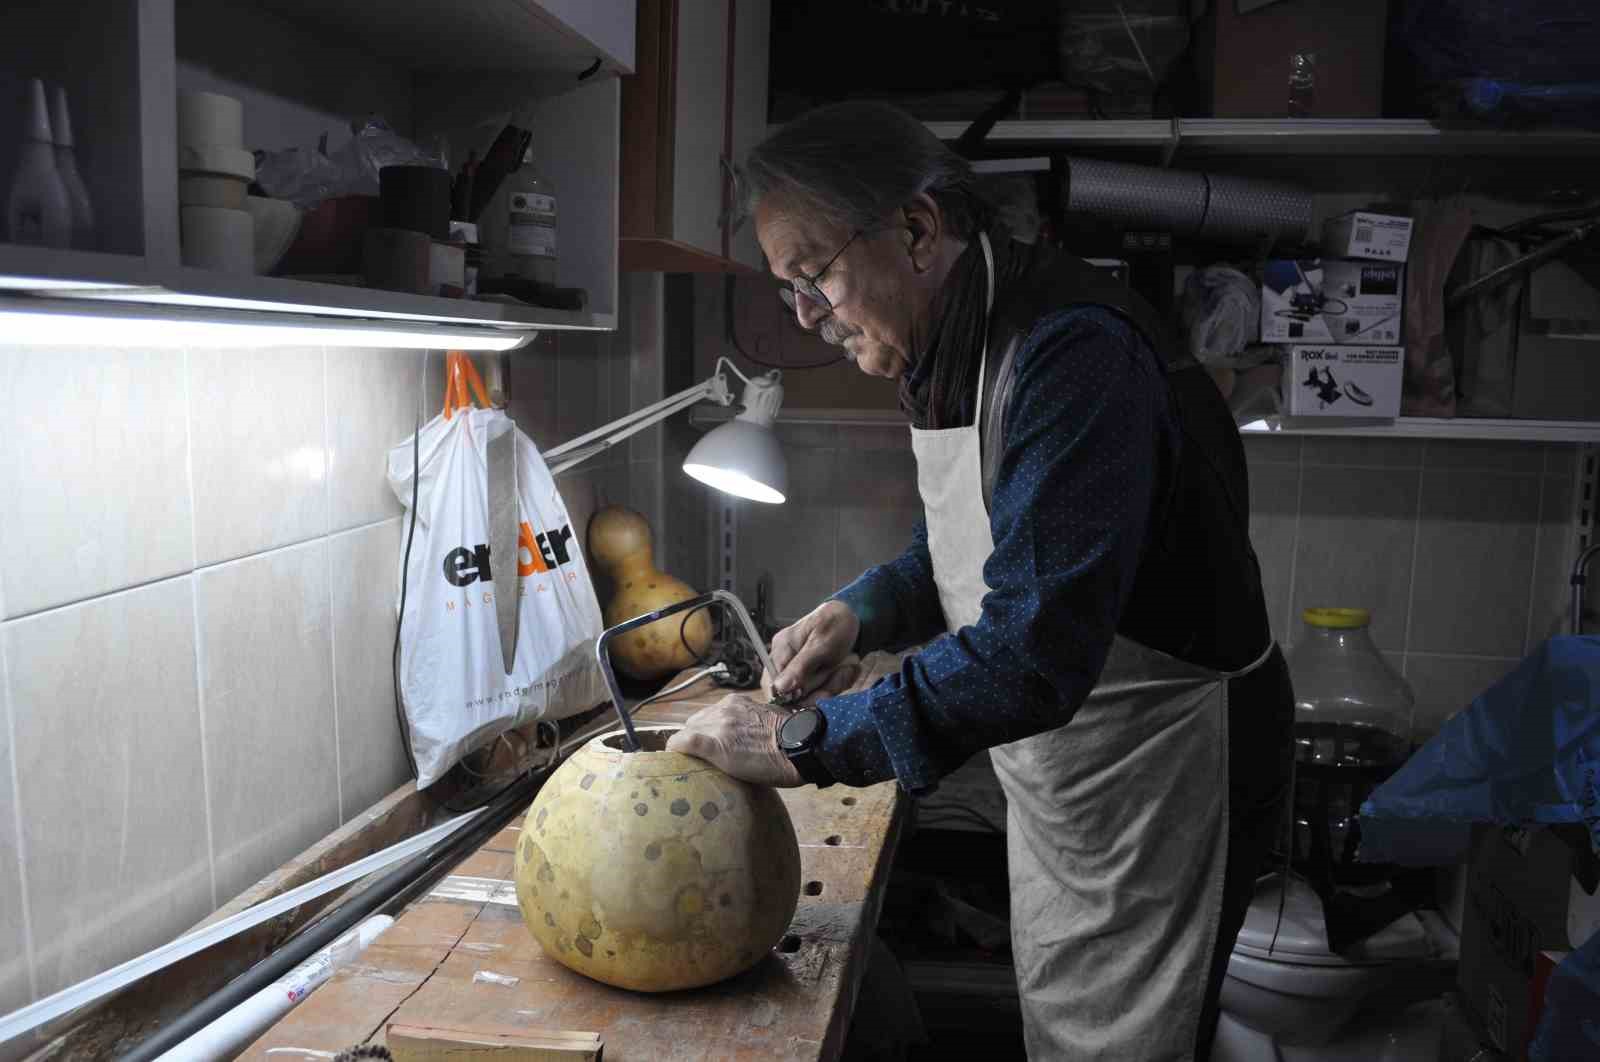 Eski öğretmen emeklilik hayatını özgün enstrümanlar oluşturmaya adadı